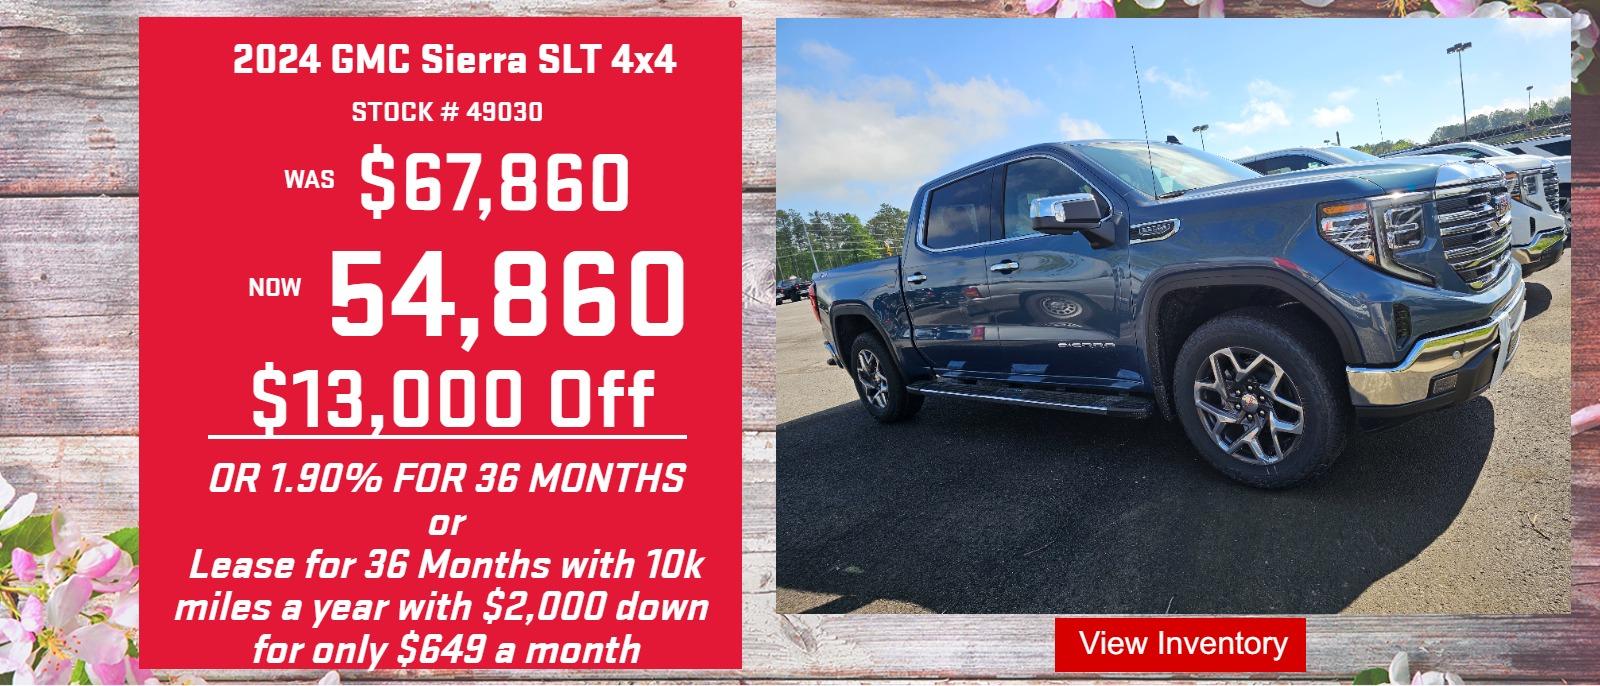 2024 GMC Sierra 1500 SLT 4x4 Lowest Price